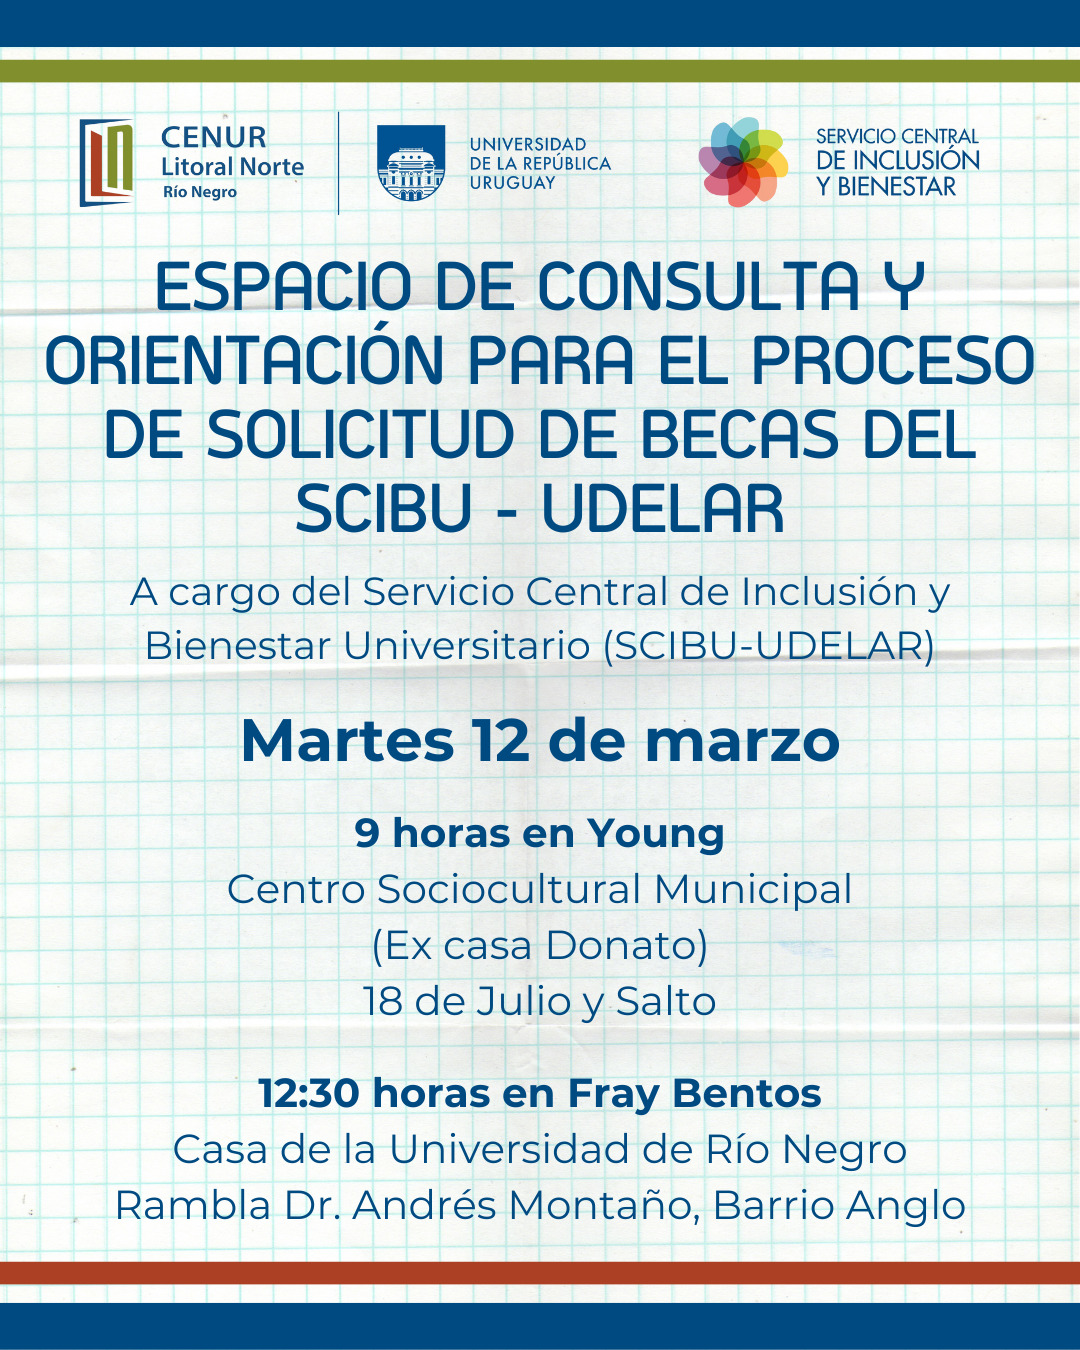 El martes 12/3 se realizará un espacio de consulta sobre BECAS en RÍO NEGRO (9 a.m Young y 12.30 p.m Fray Bentos). 